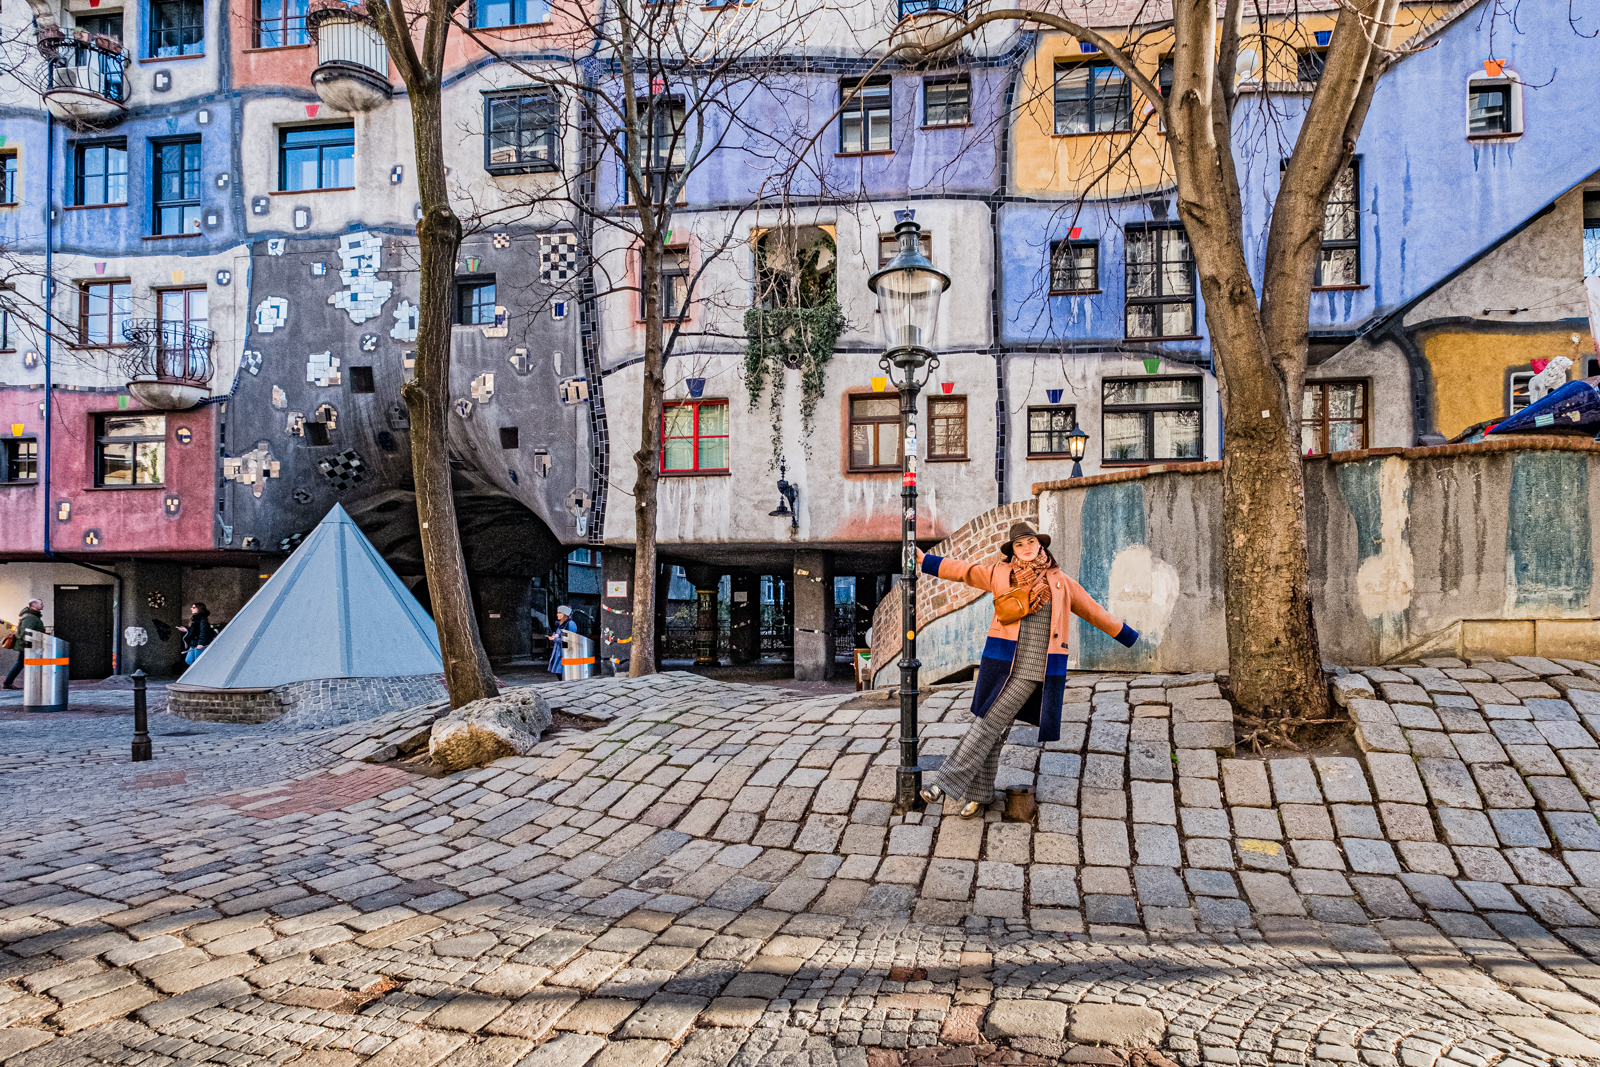 Hundertwasserhaus from Vienna...